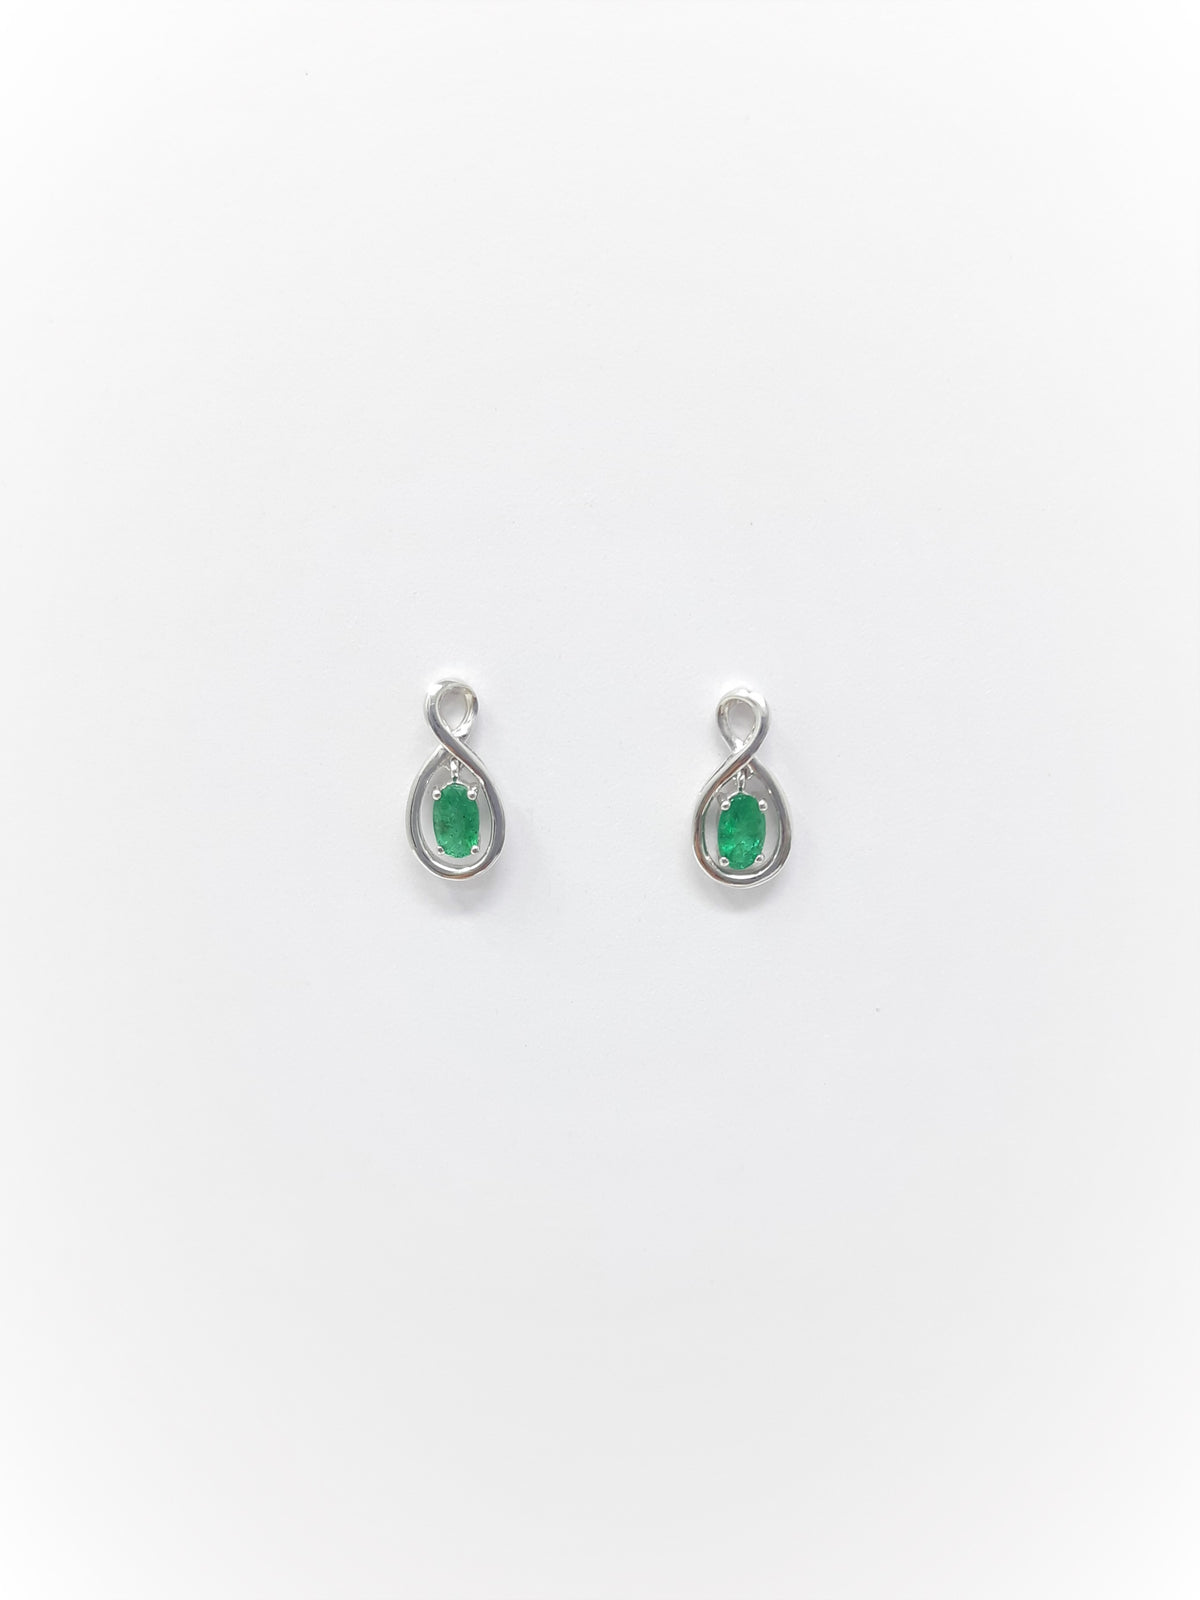 10K White Gold Oval Cut Emerald Stud Earrings